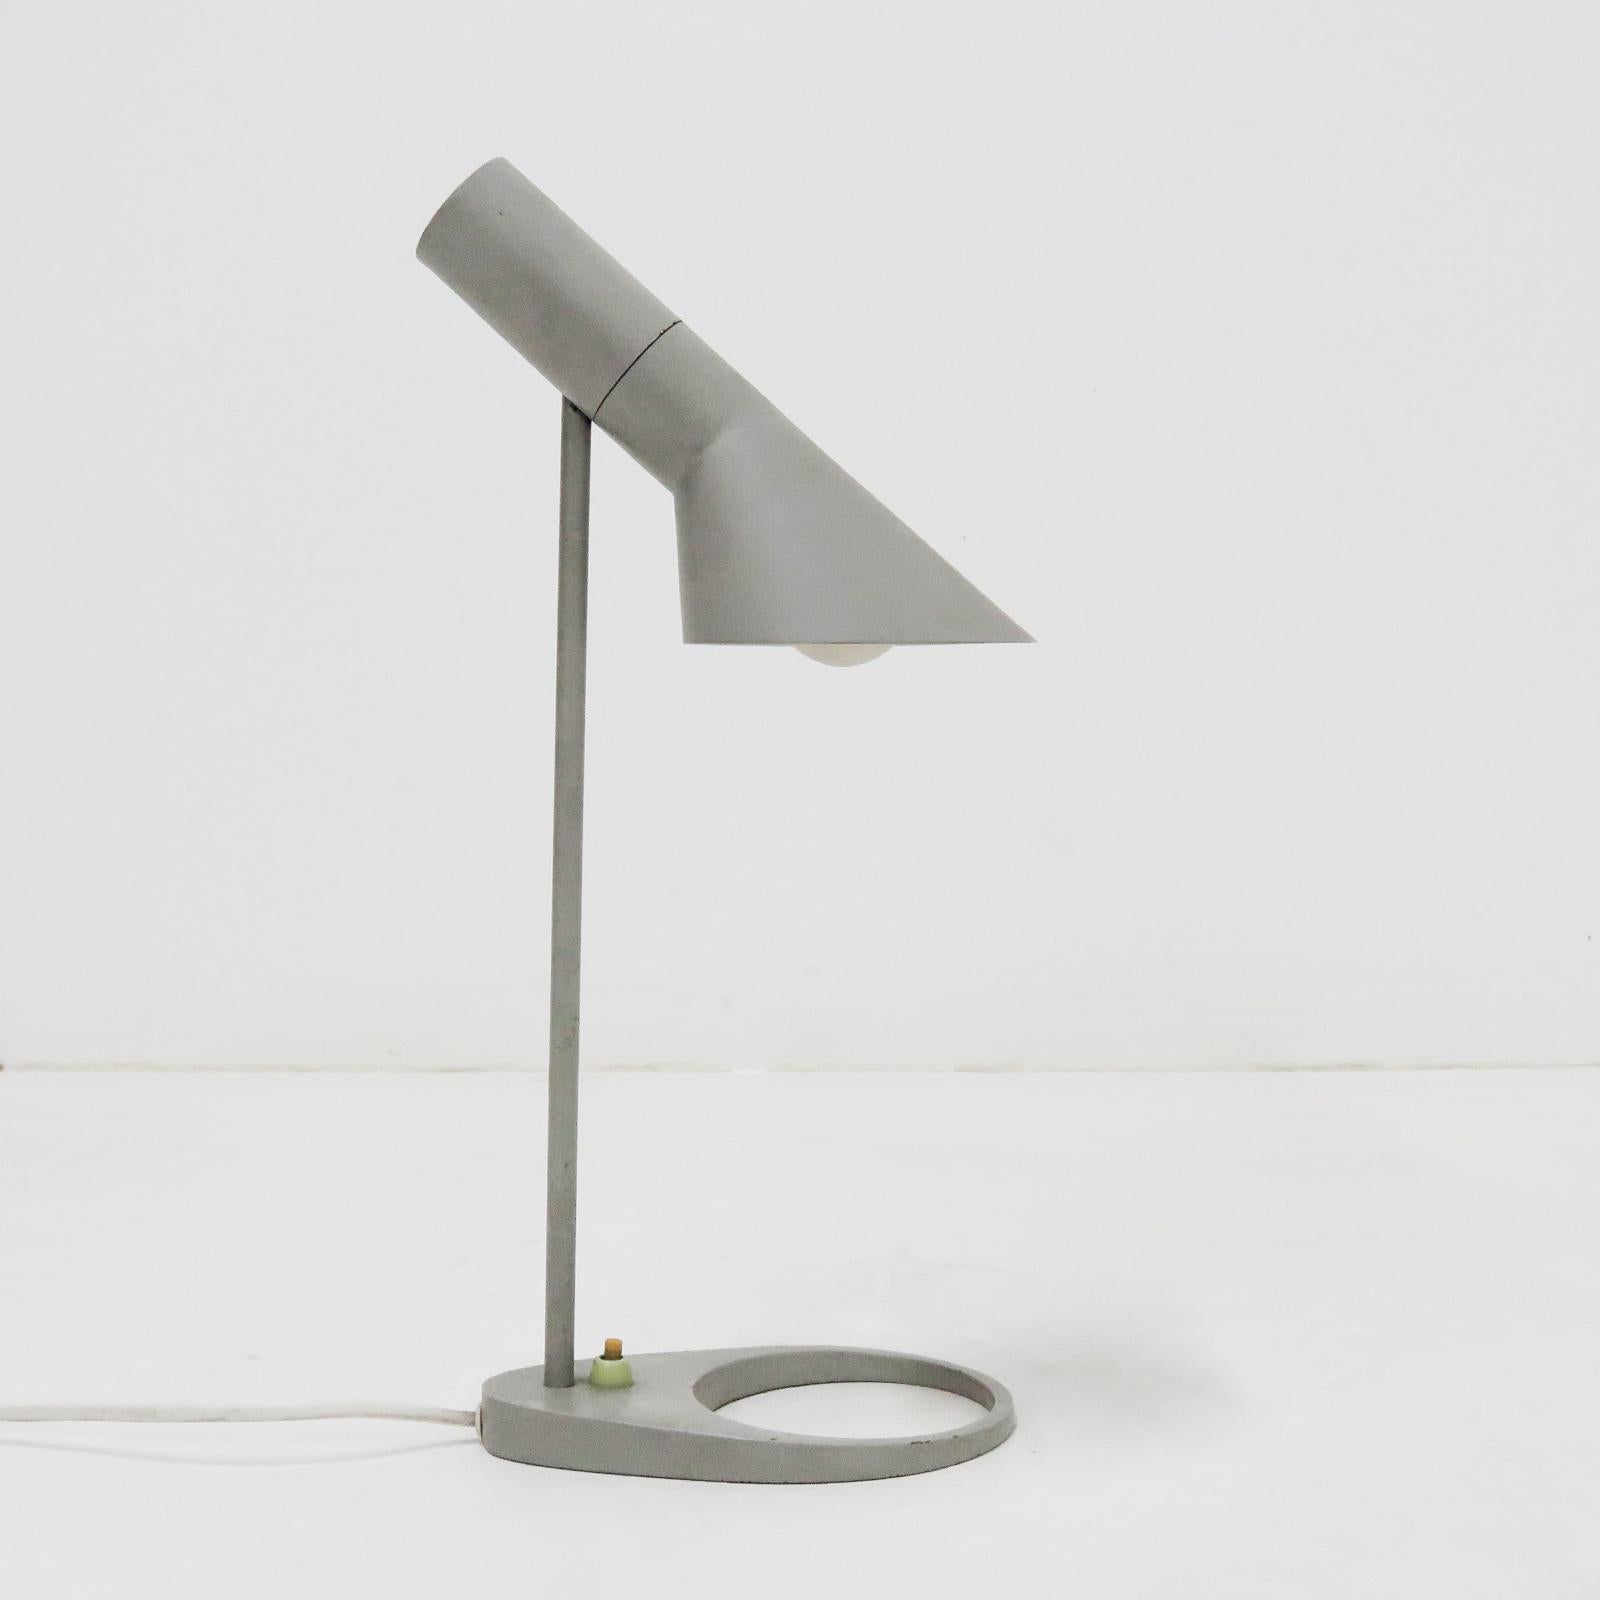 Lampe de bureau classique grise en acier avec laquage original dessinée par Arne Jacobsen, probablement Axel Annell sous licence de Louis Poulsen, Danemark, l'angle de l'abat-jour peut être ajusté pour optimiser la distribution de la lumière, câblée